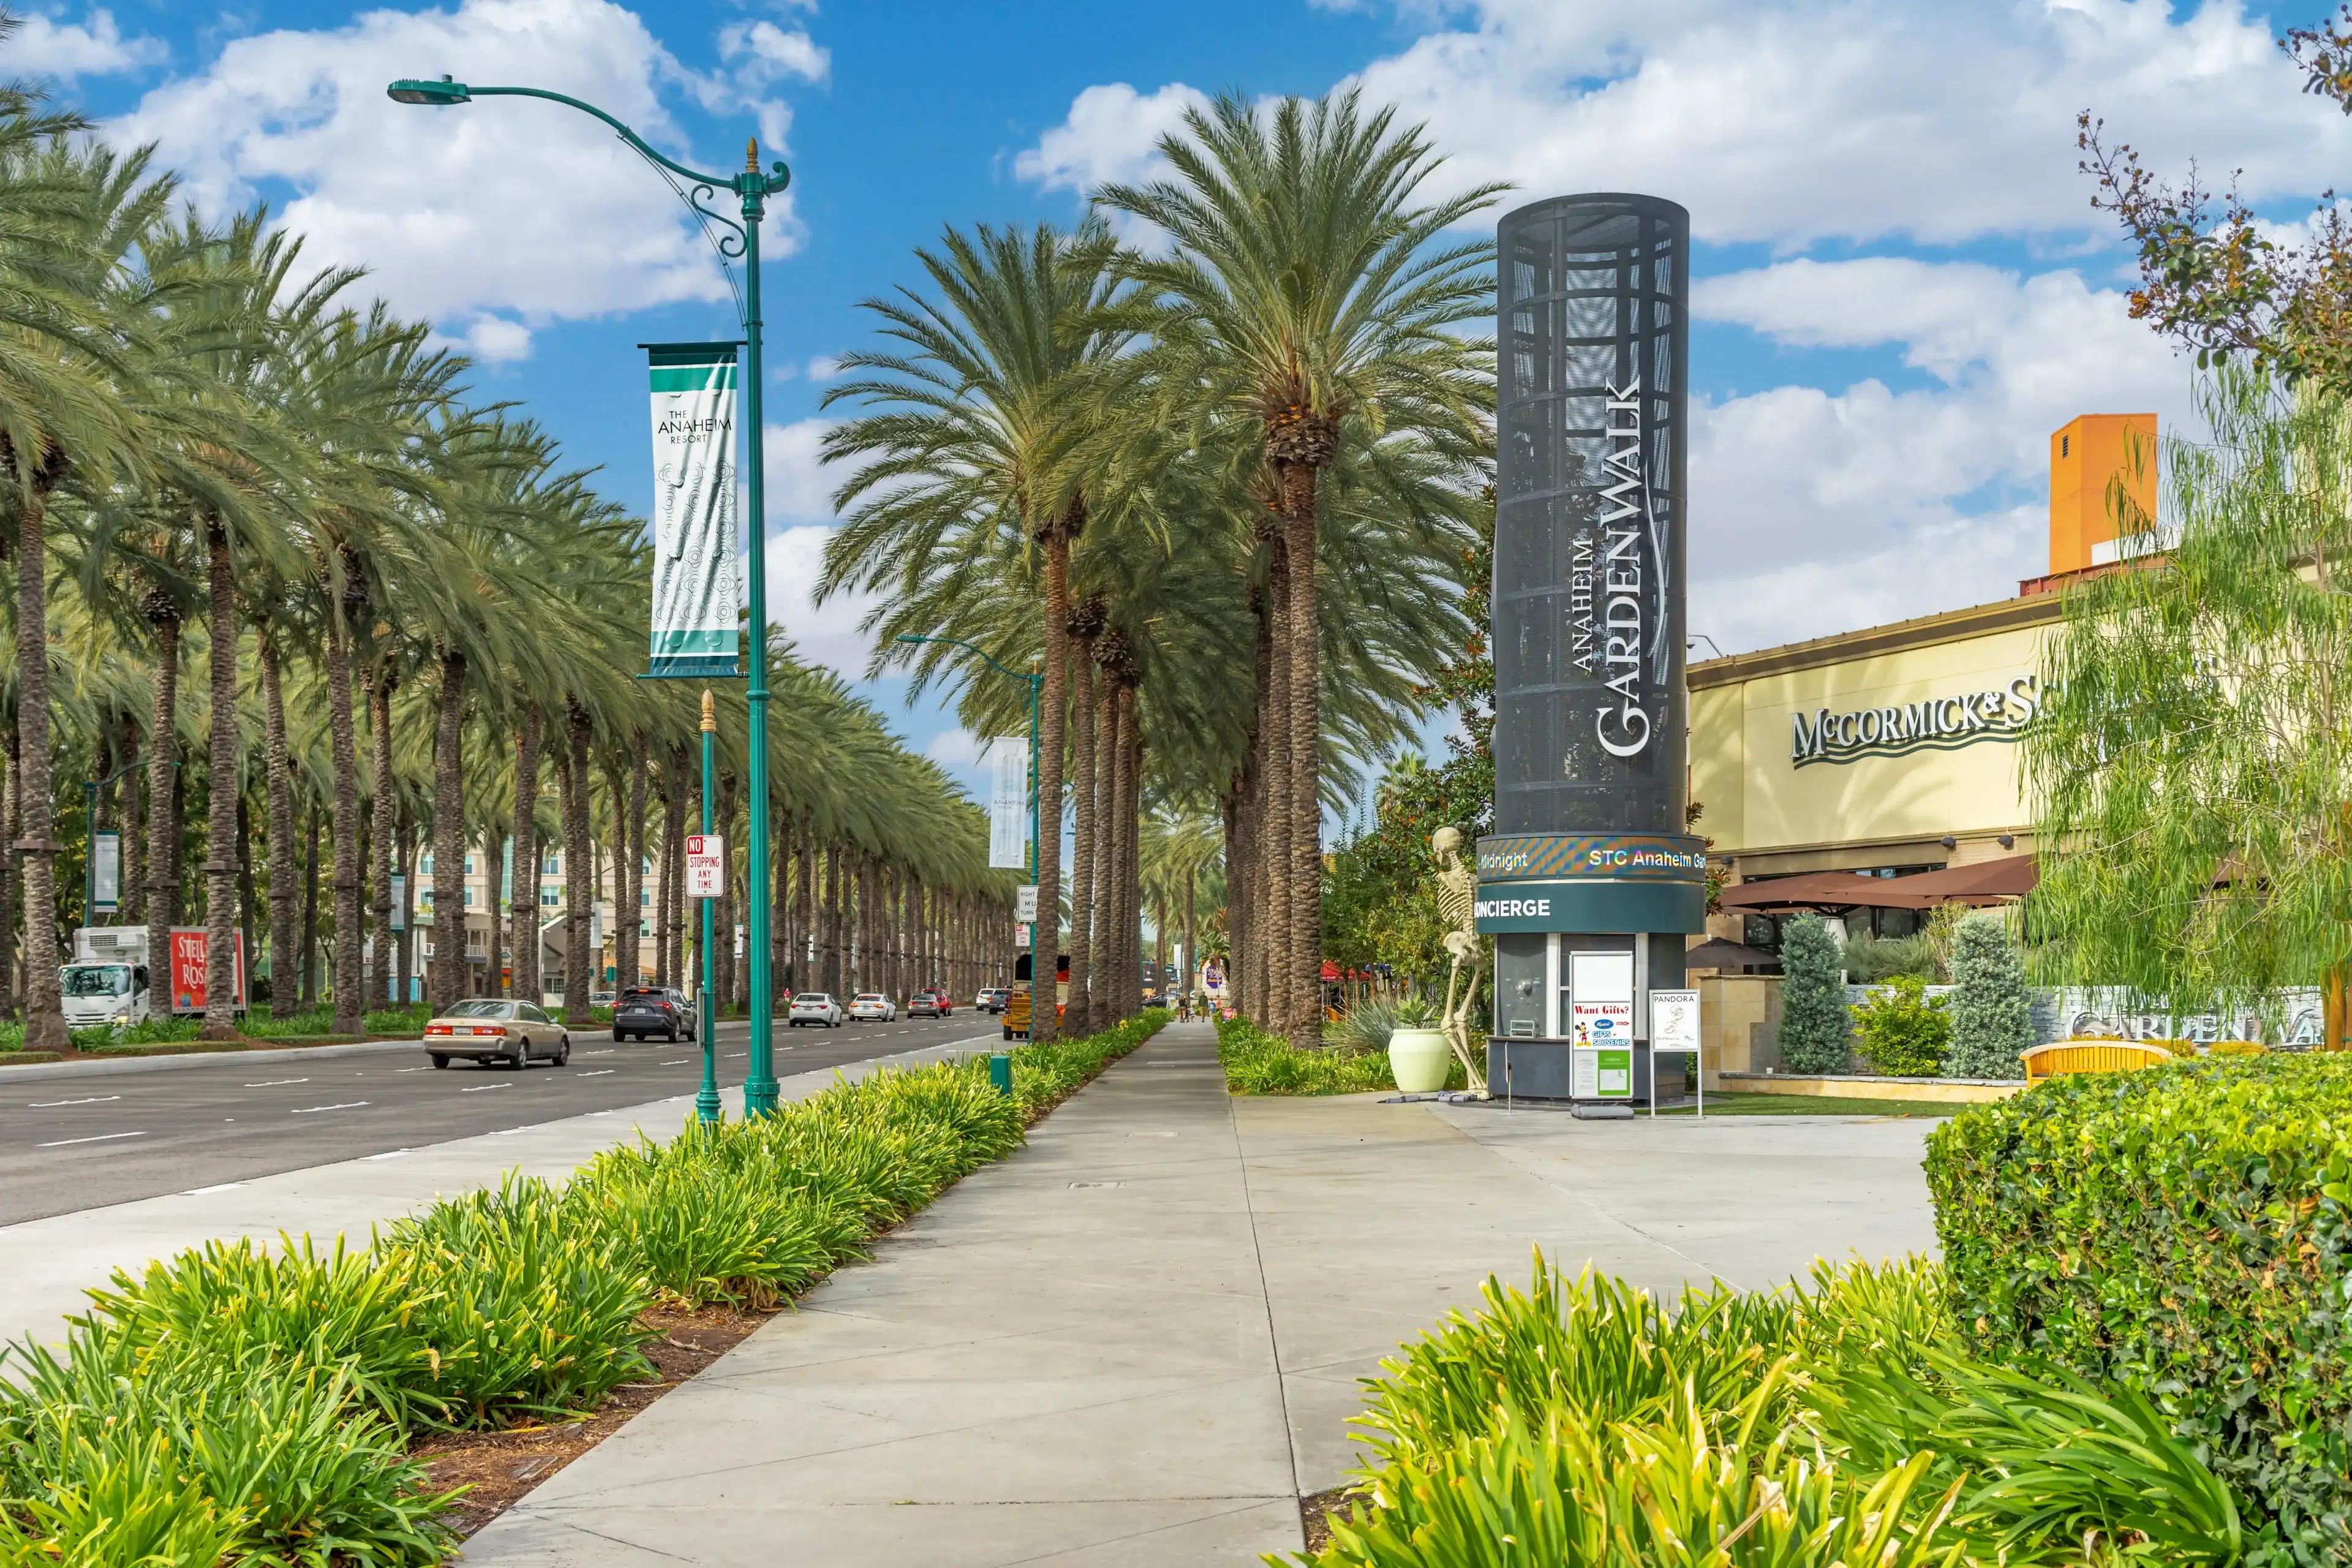 Best Anaheim hotels. Cheap hotels in Anaheim, California, United States